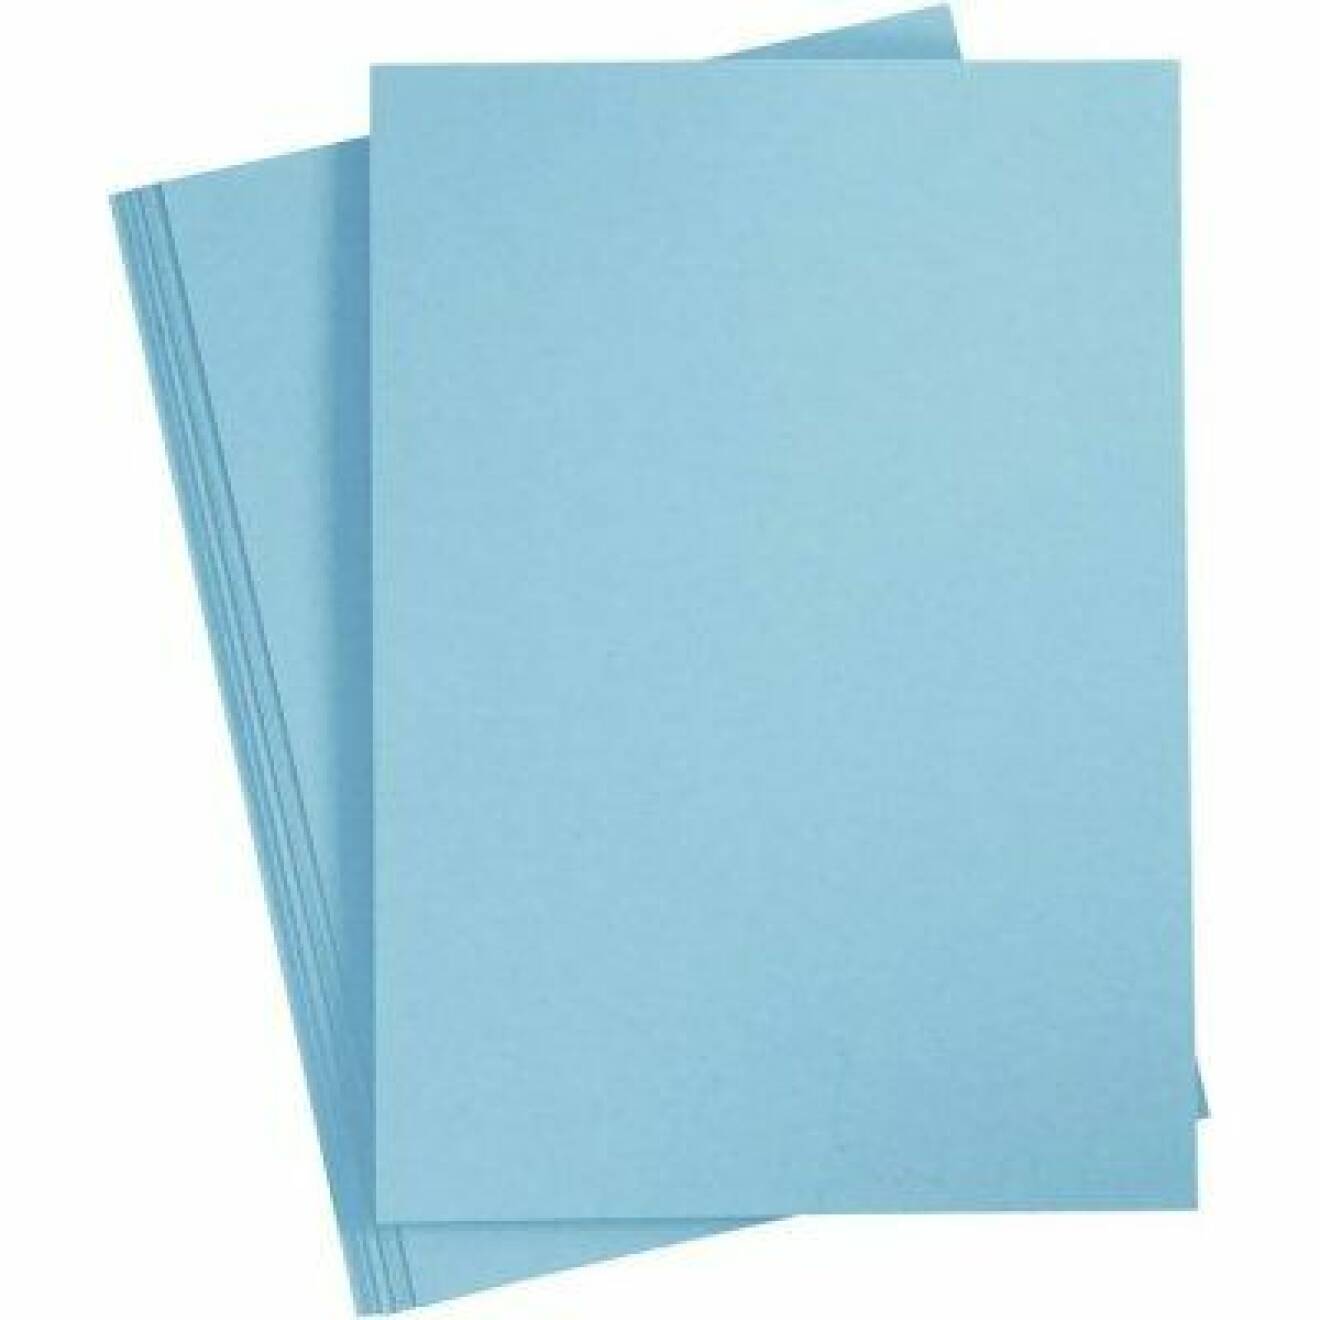 Ljusblått papper.